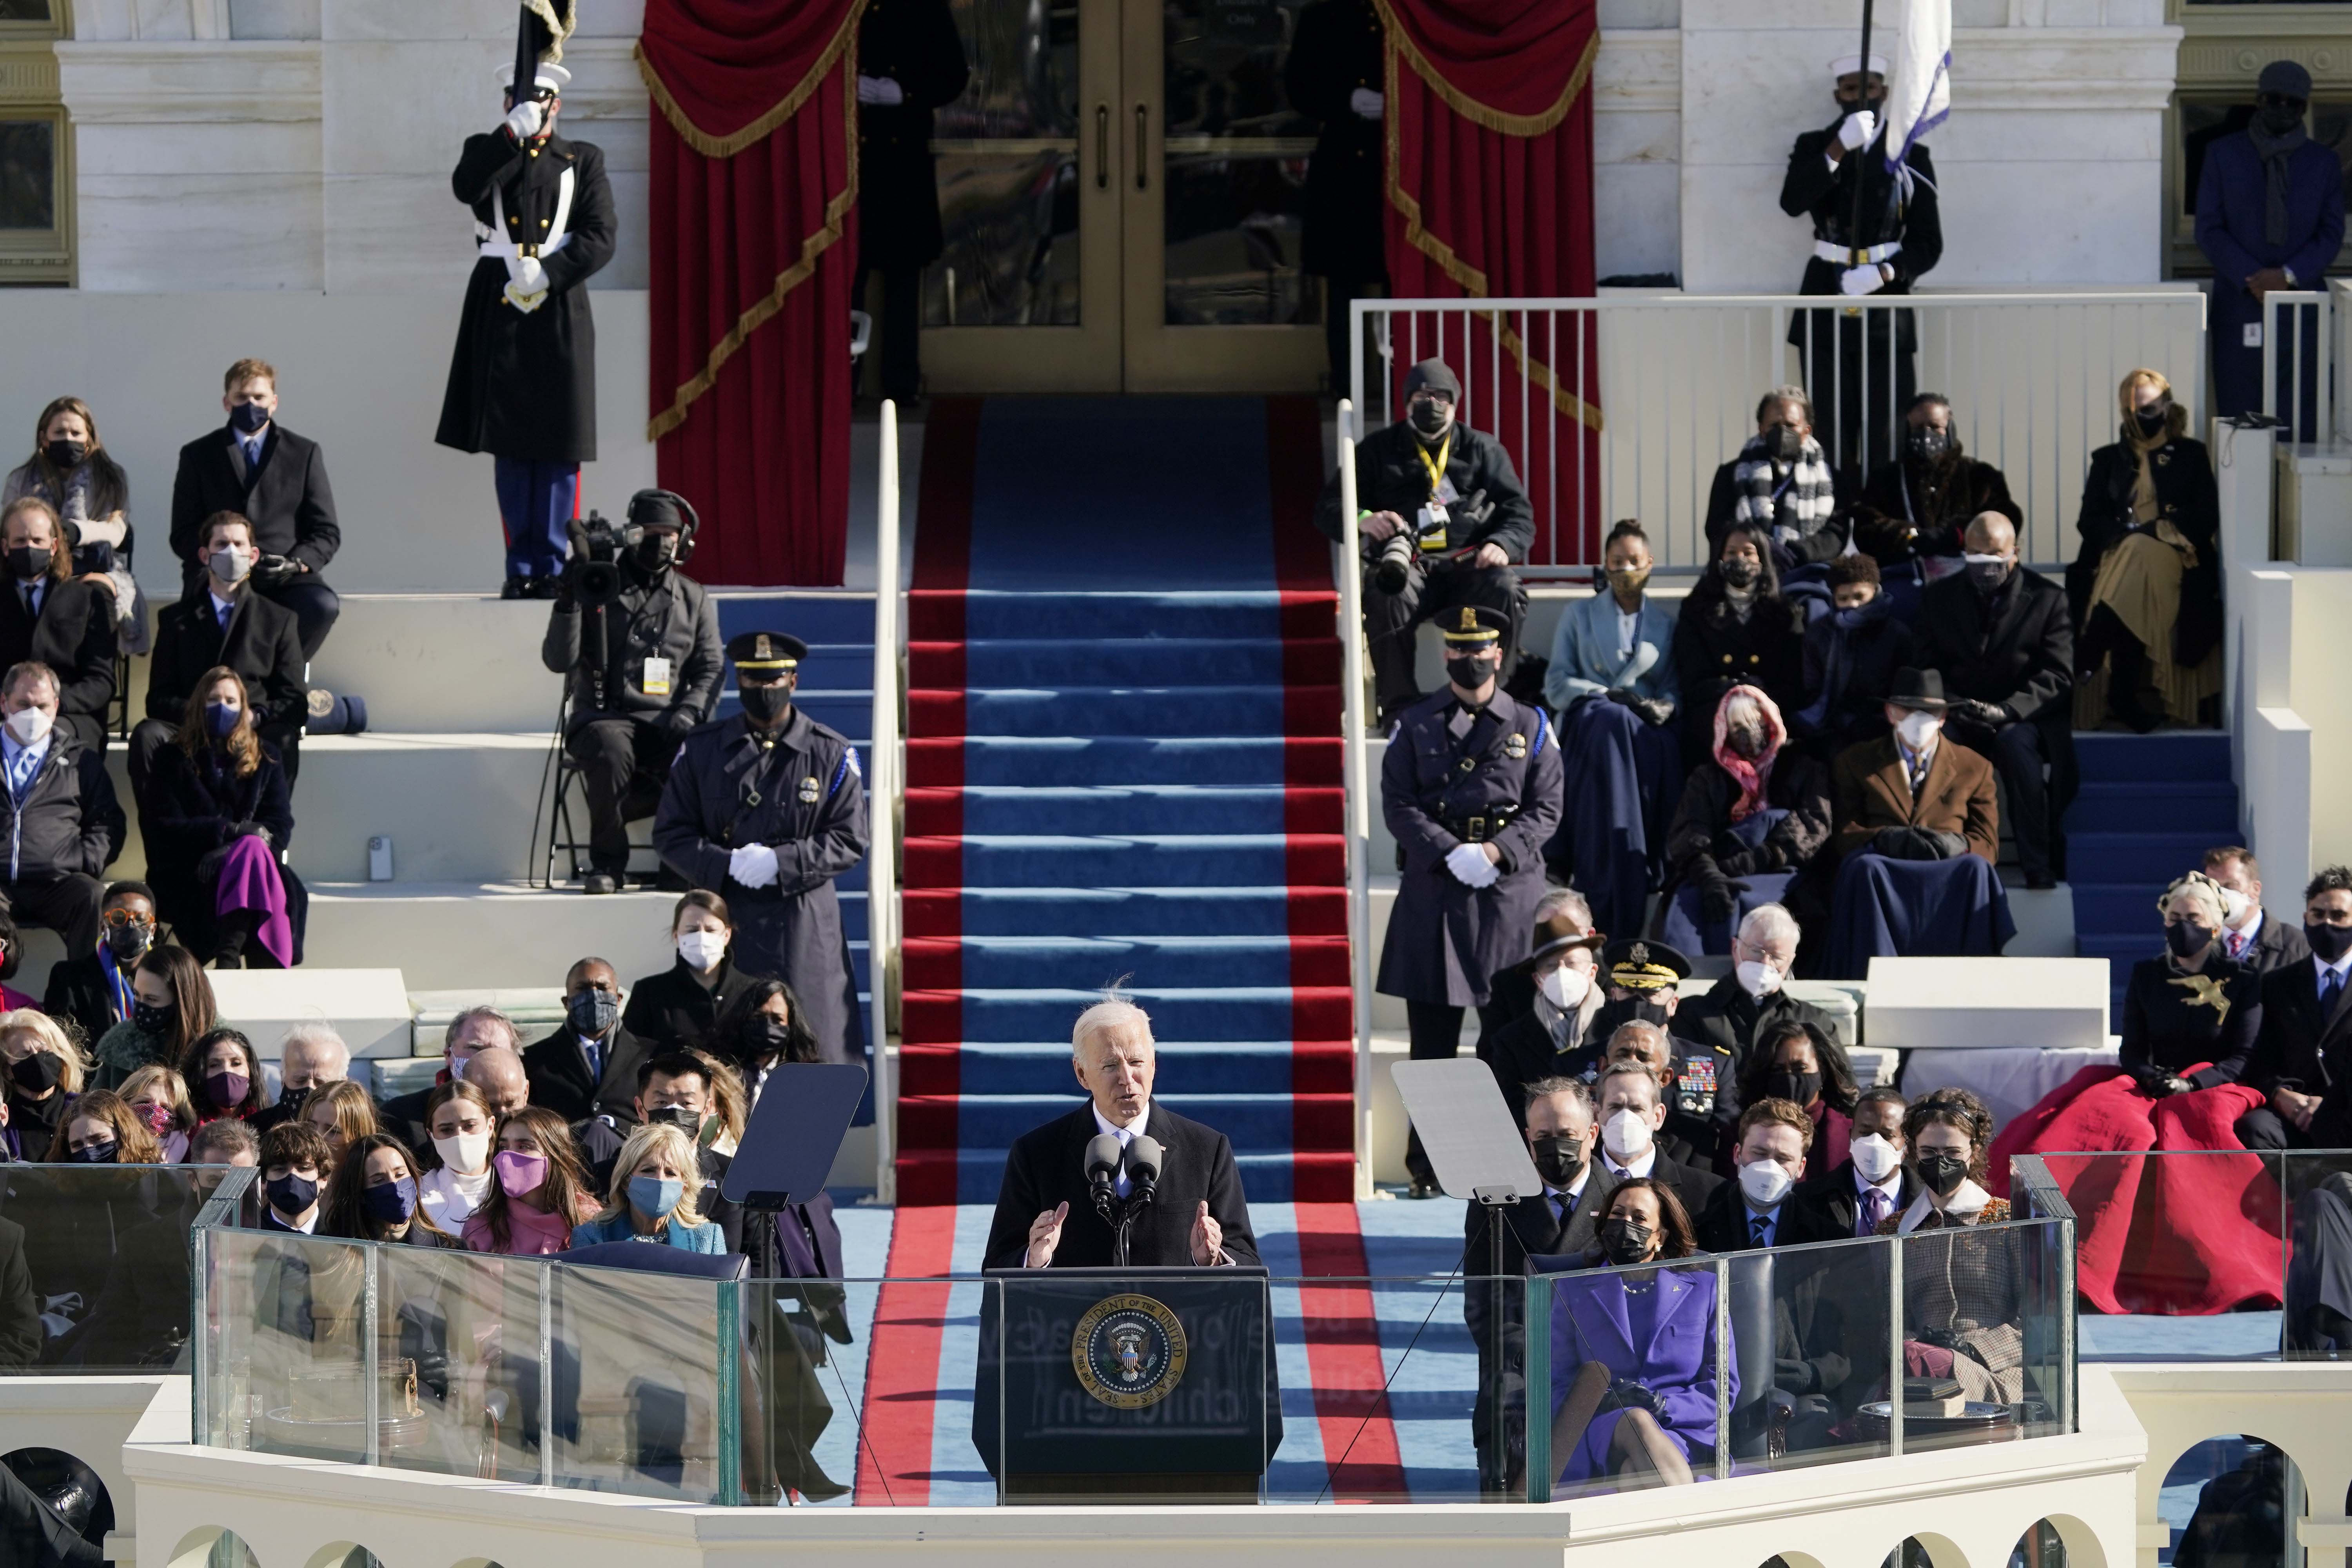 Joe Biden tomou posse como 46° presidente dos Estados Unidos nesta quarta-feira (20). Leia abaixo a íntegra de seu primeiro discurso no cargo, proferido na cerimônia que marcou o início de seu mandato....